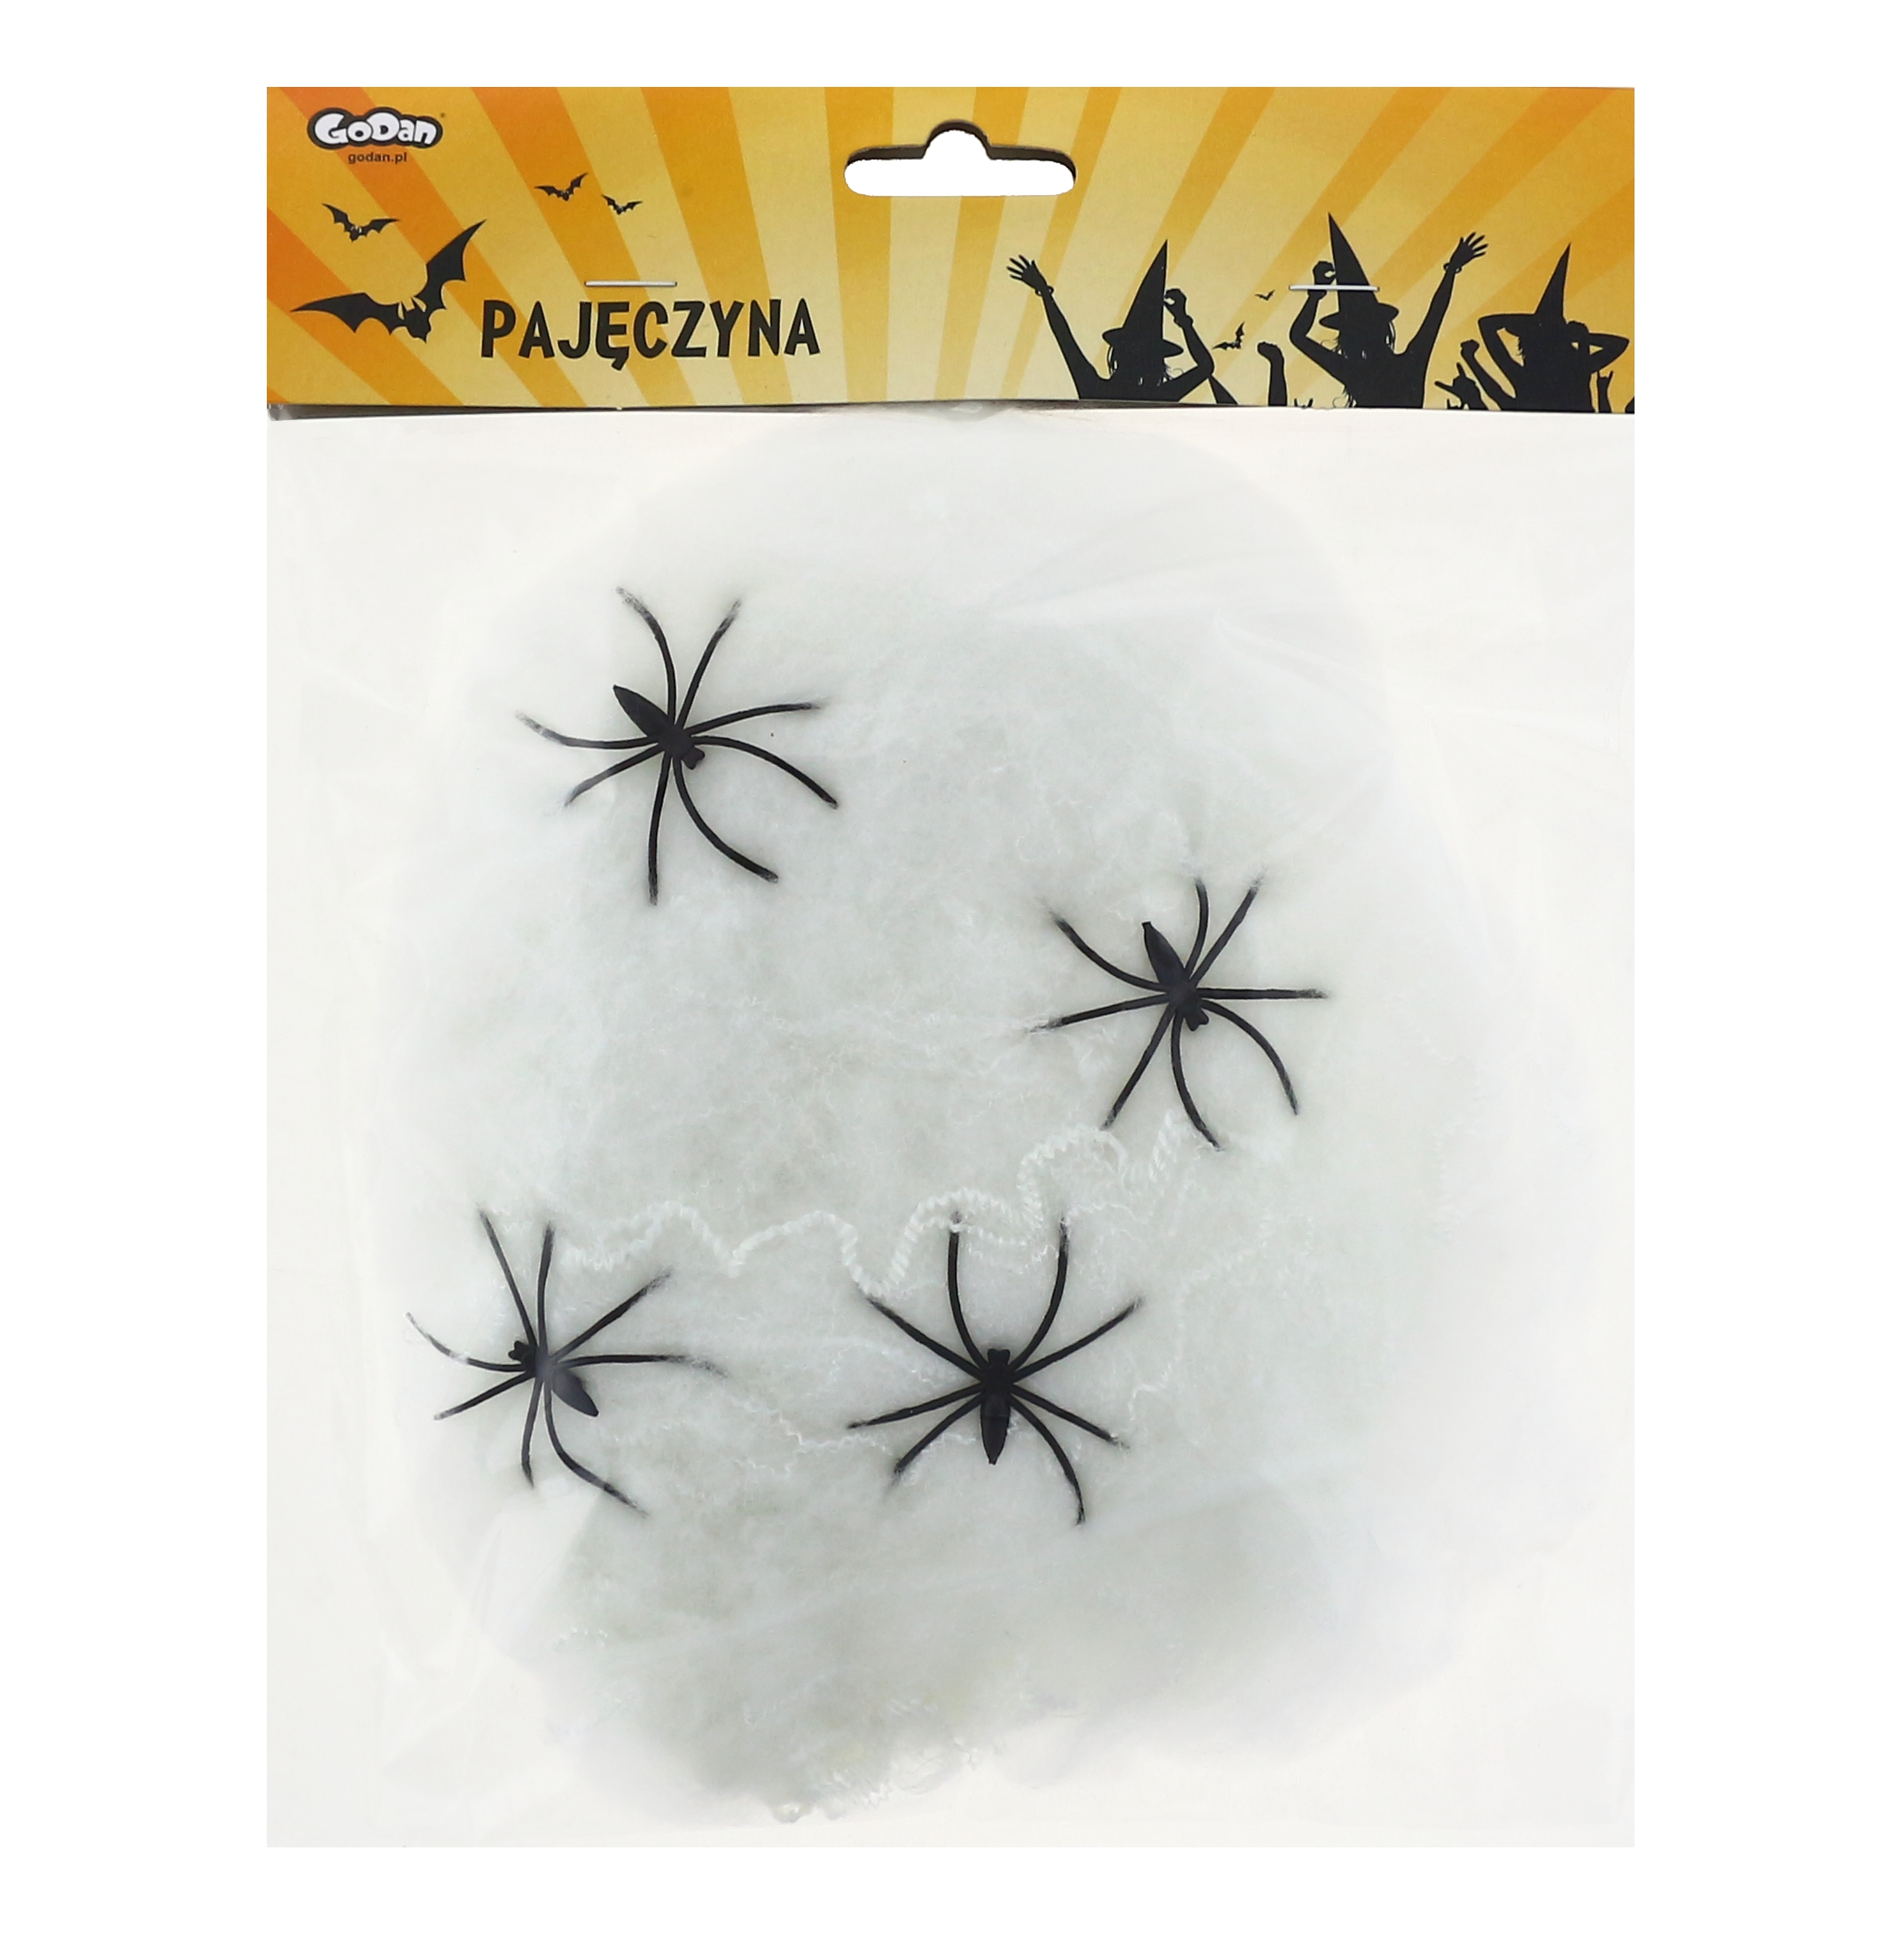 Biała pajęczyna z pająkami / 40 g